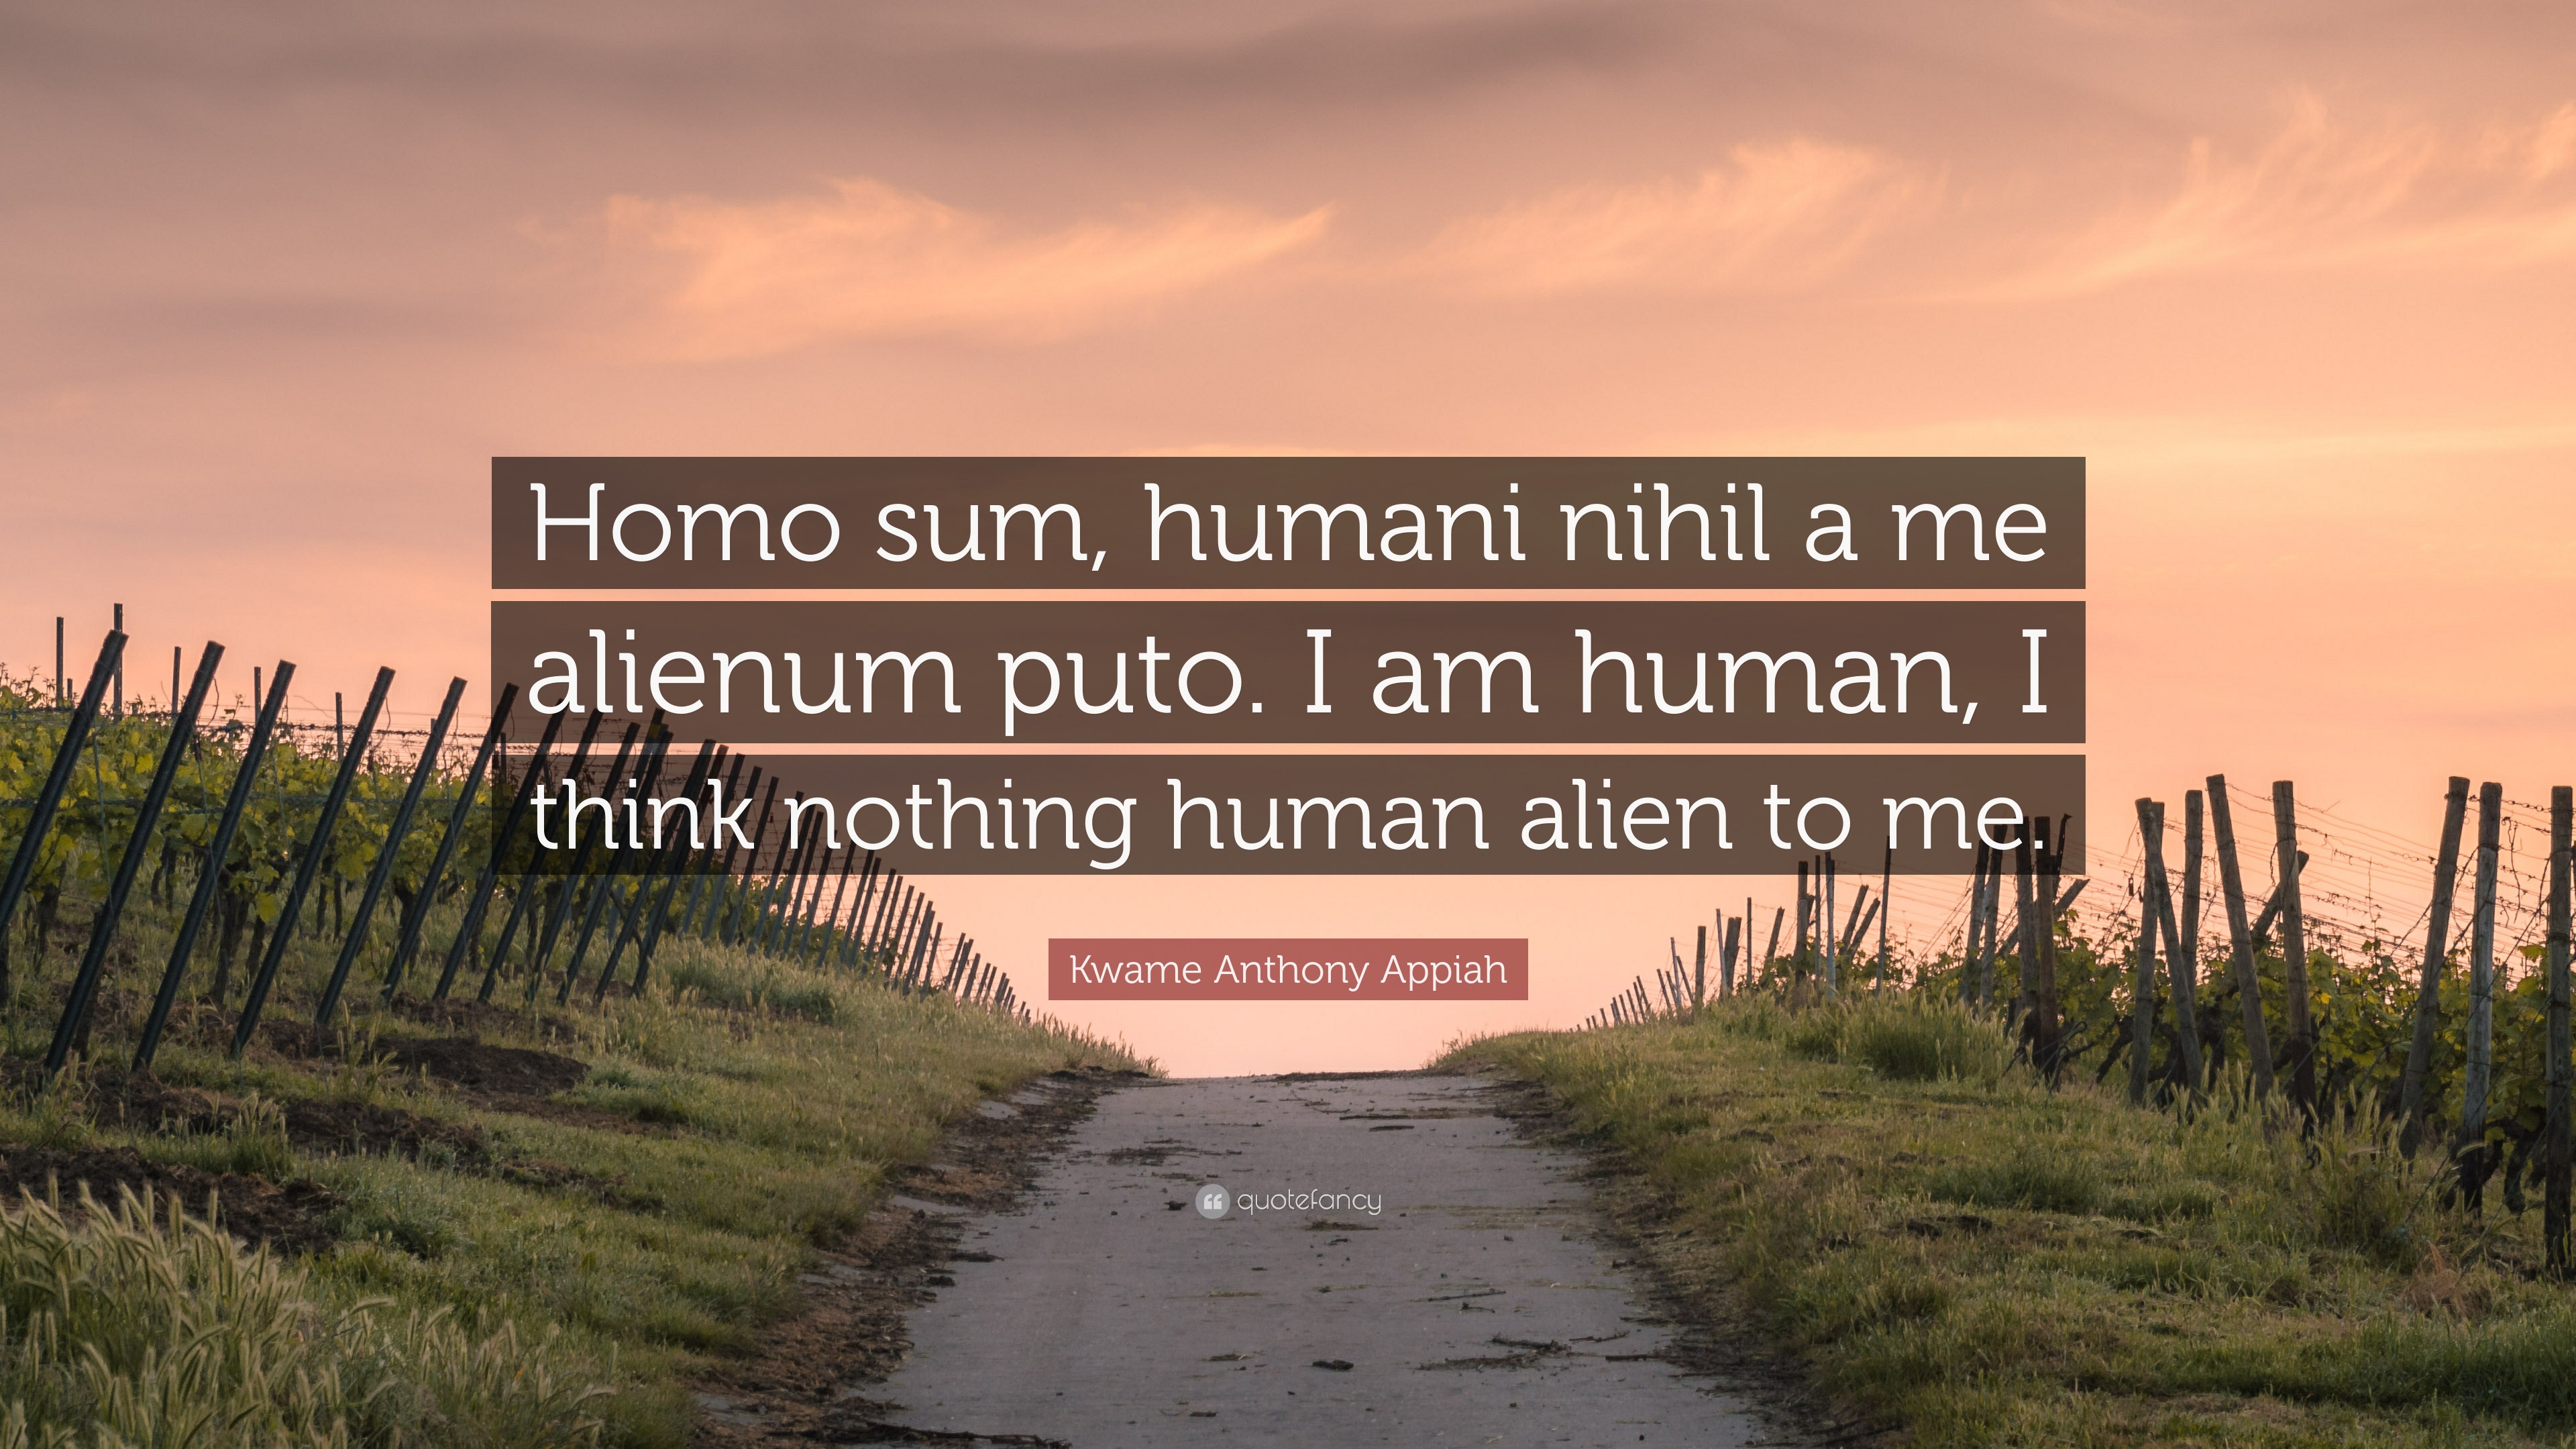 Humani a me puto homo nihil sum alienum Homo sum,